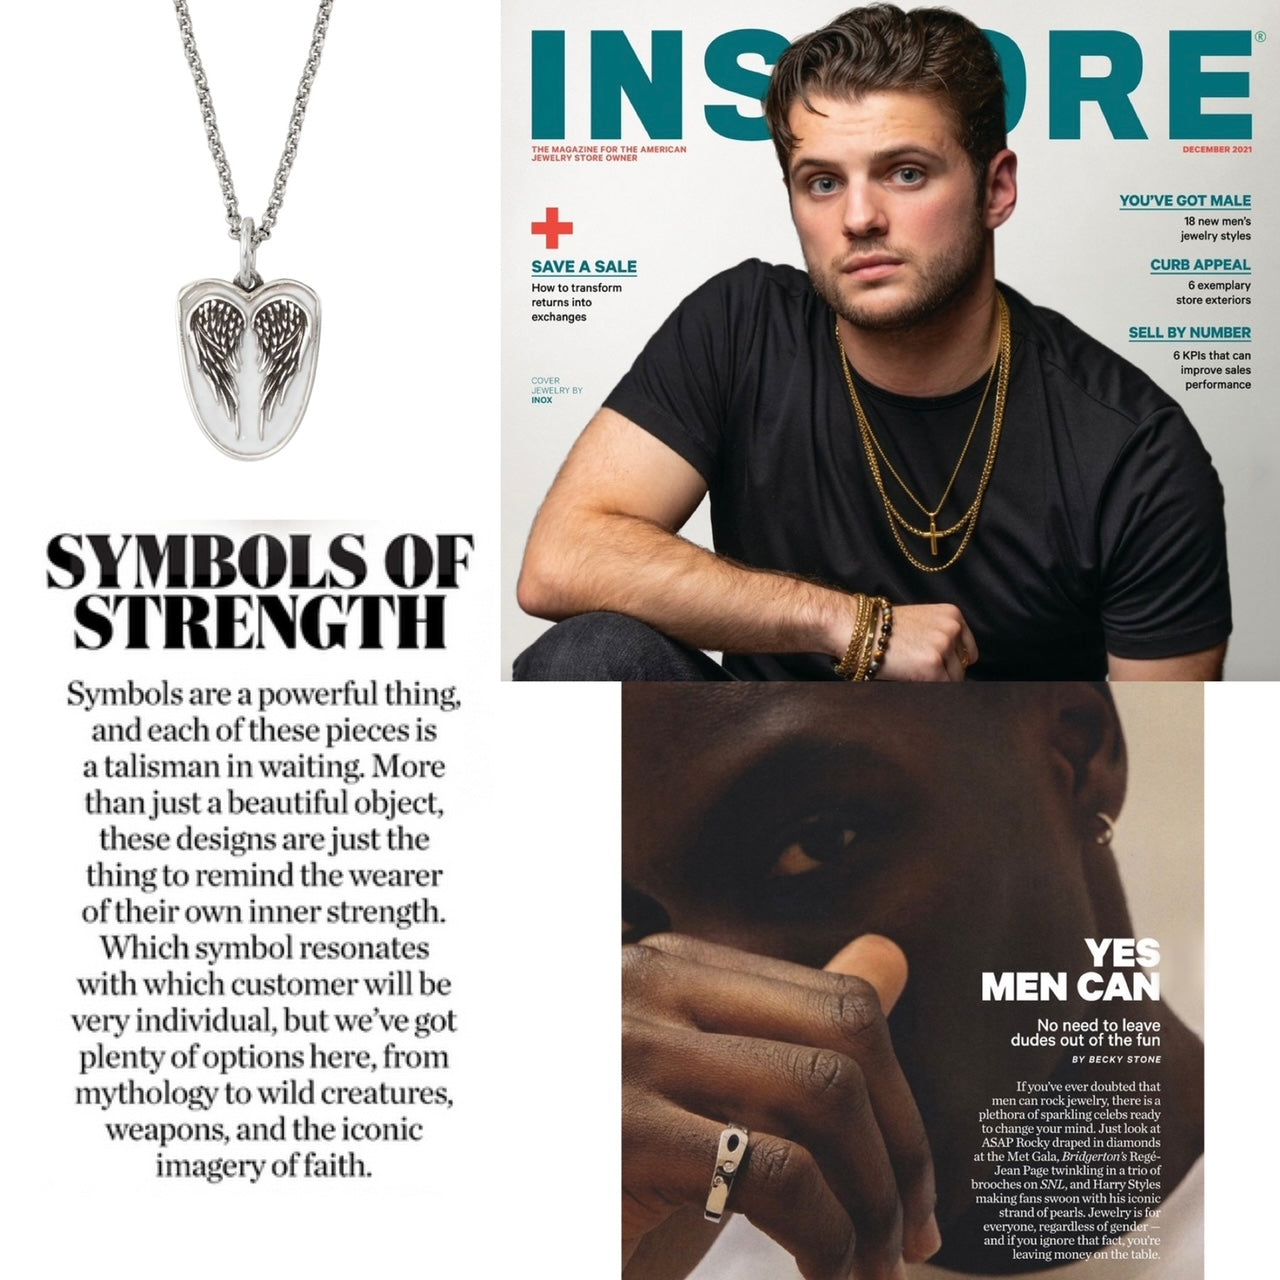 InStore Magazine Feature!